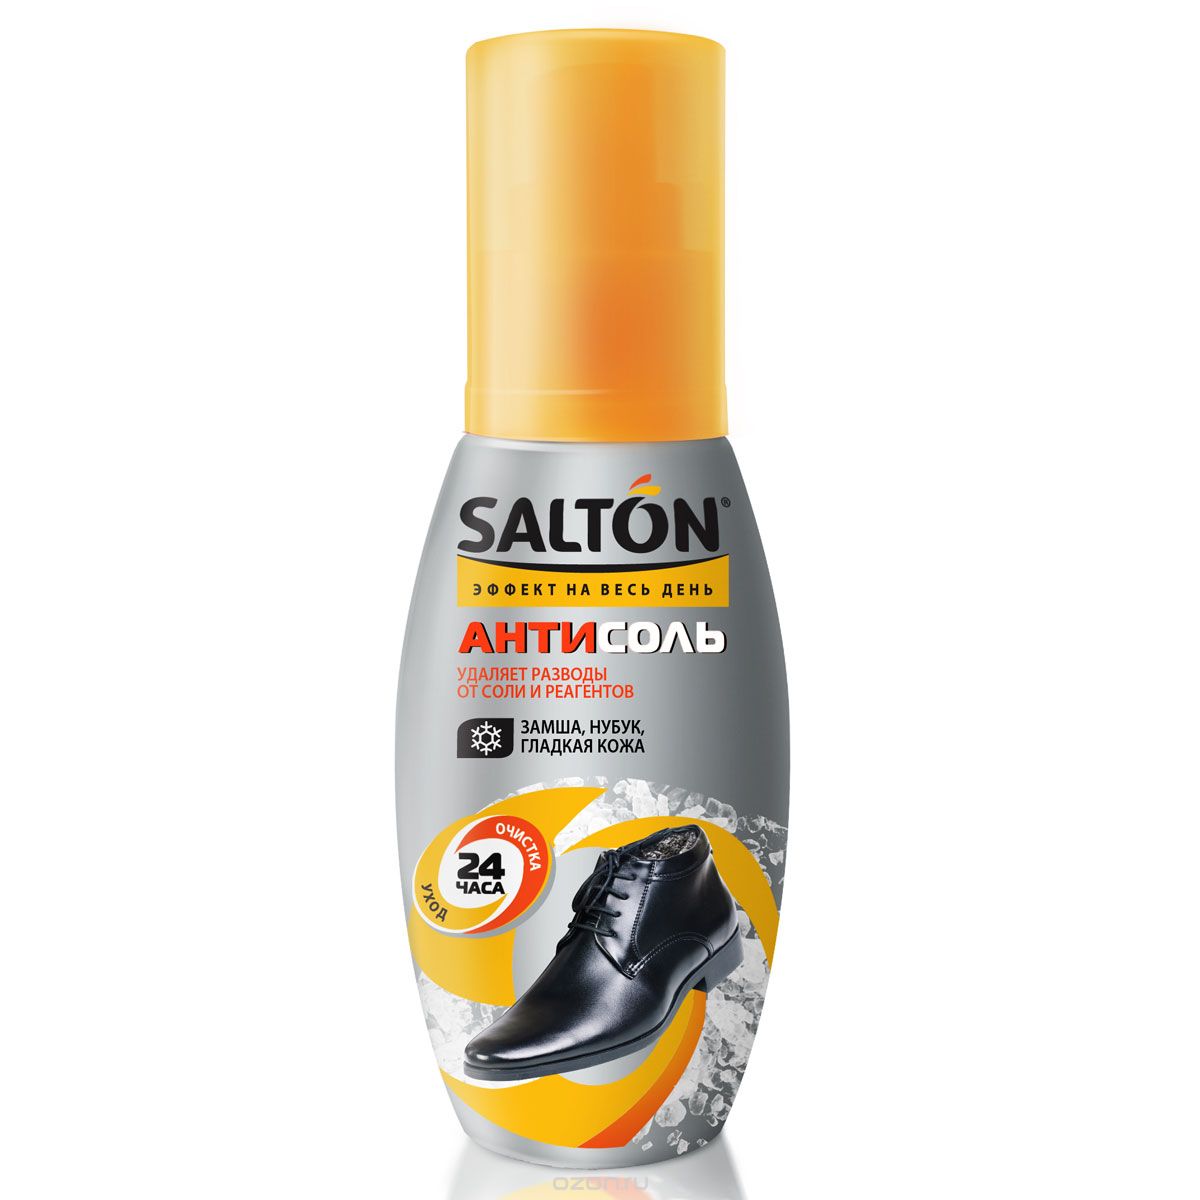 Очиститель разводов для обуви от соли и реагентов Salton "Антисоль"